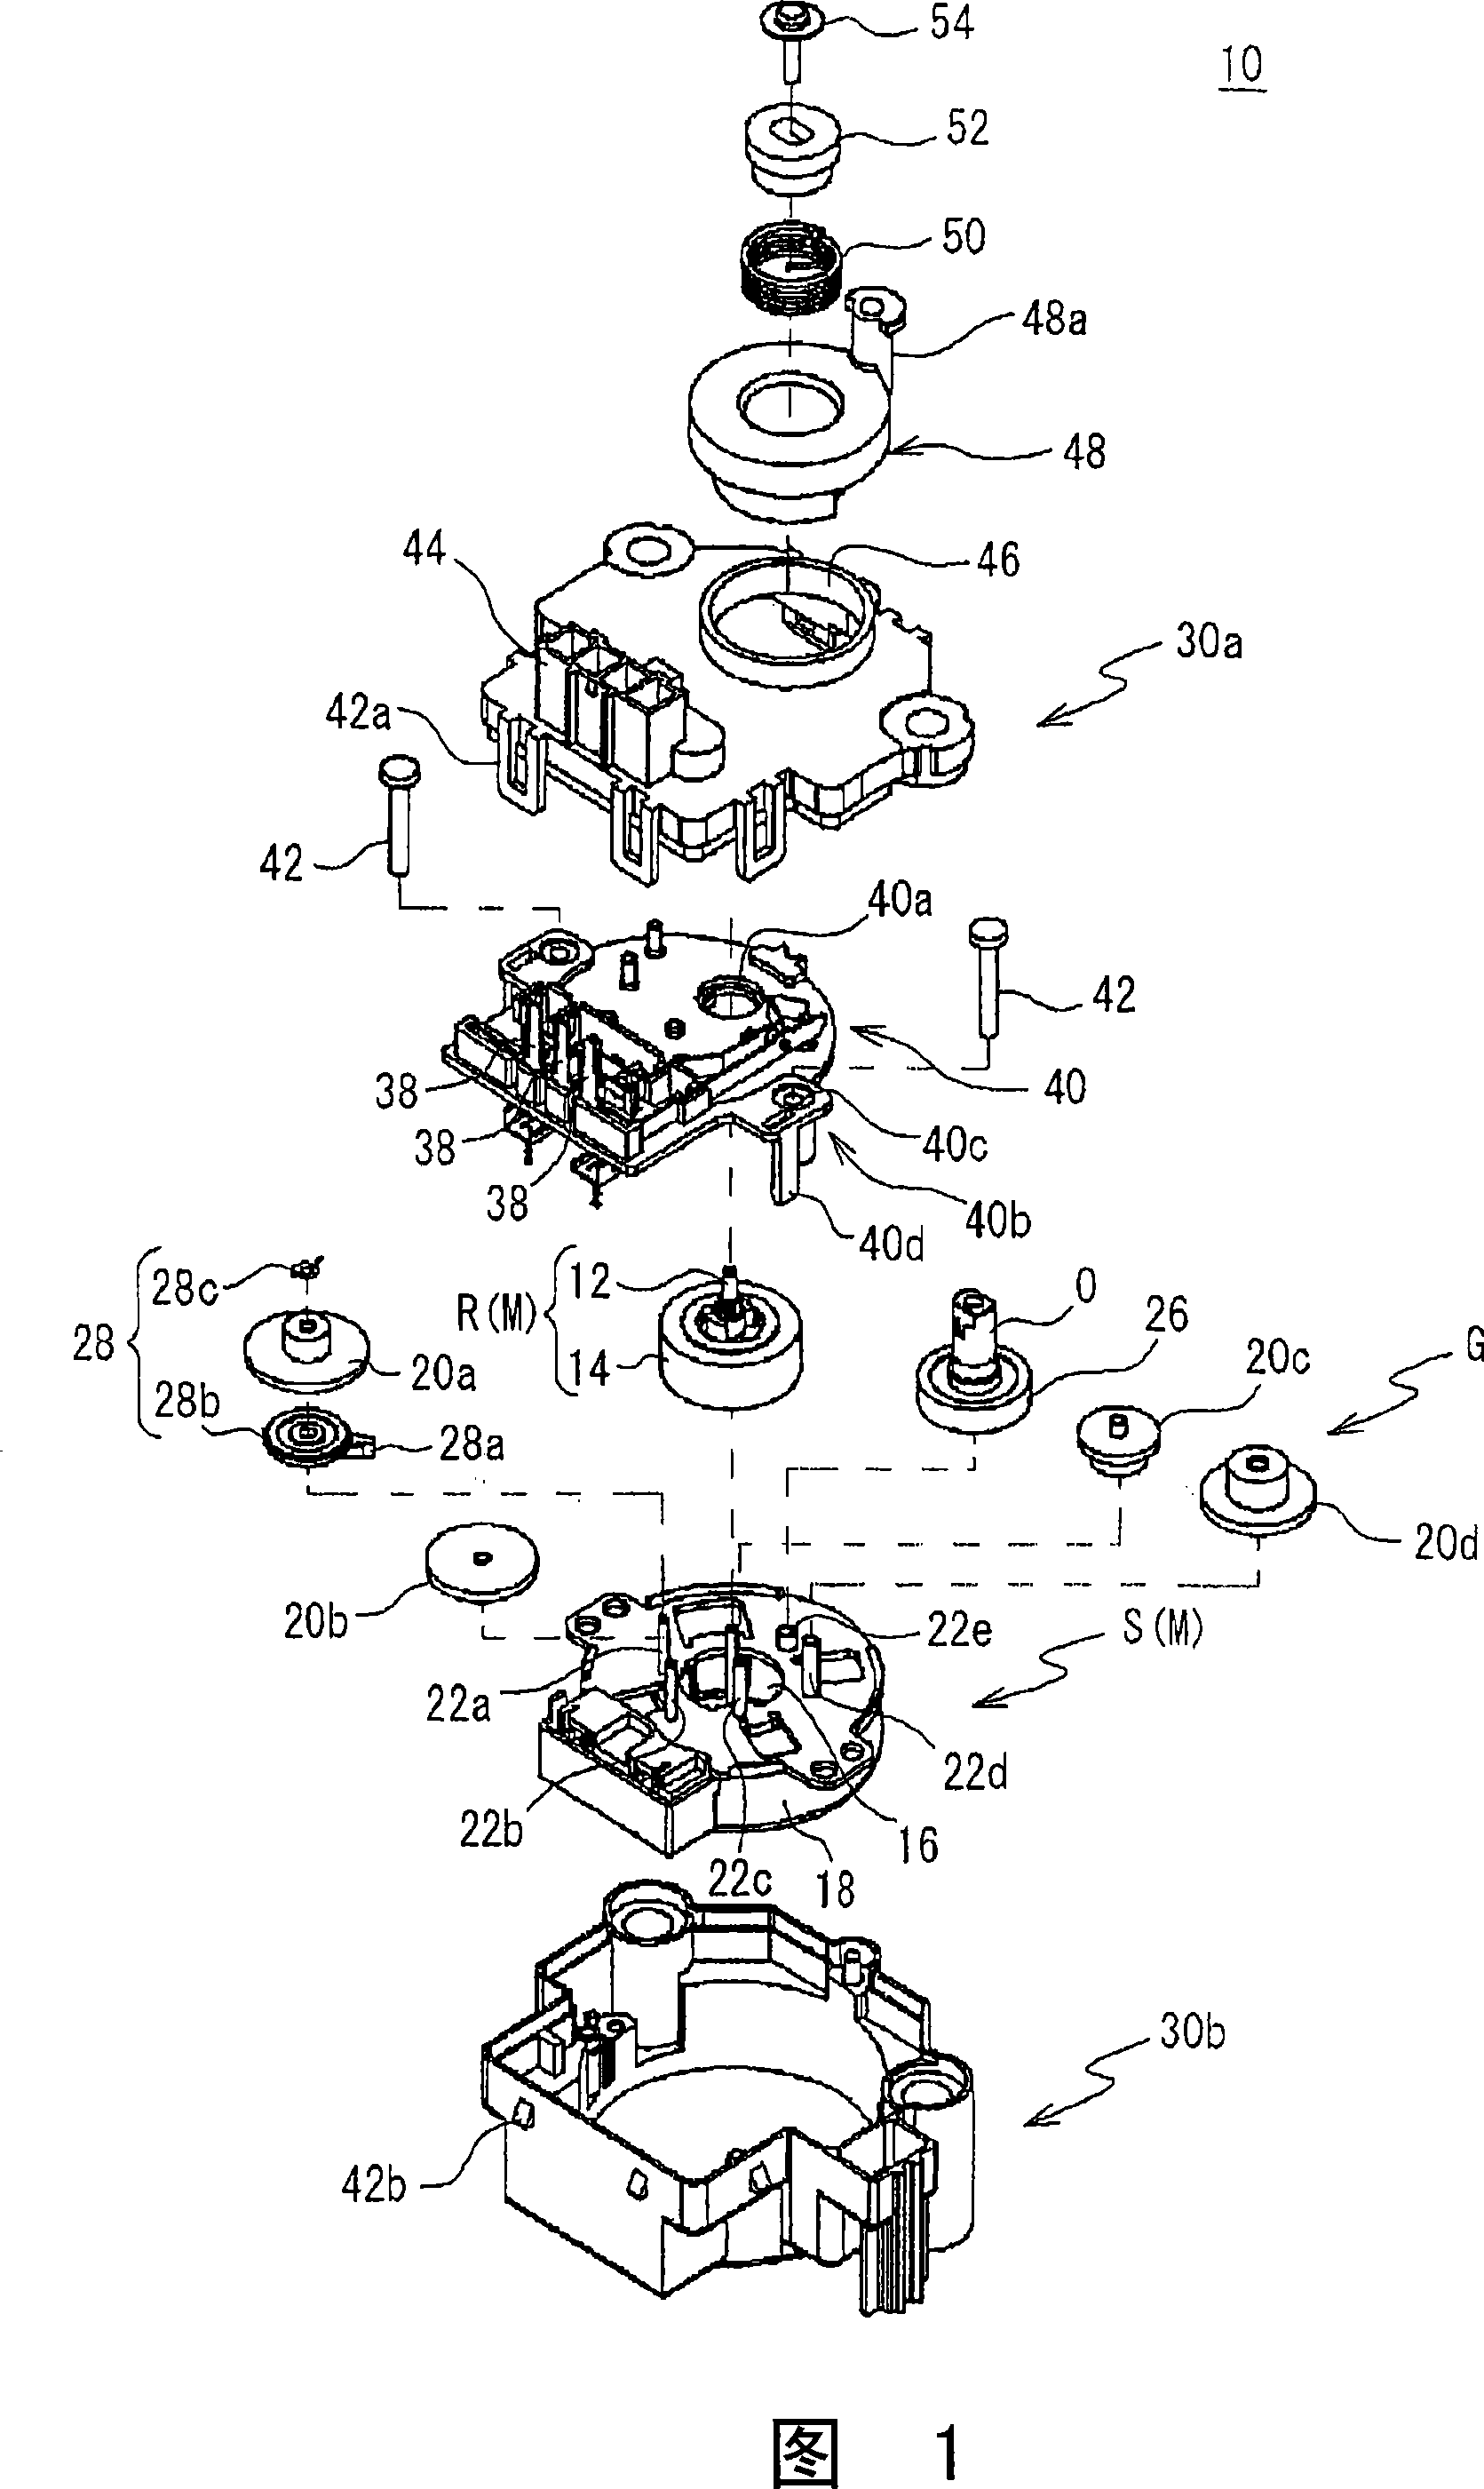 Gear drive motor